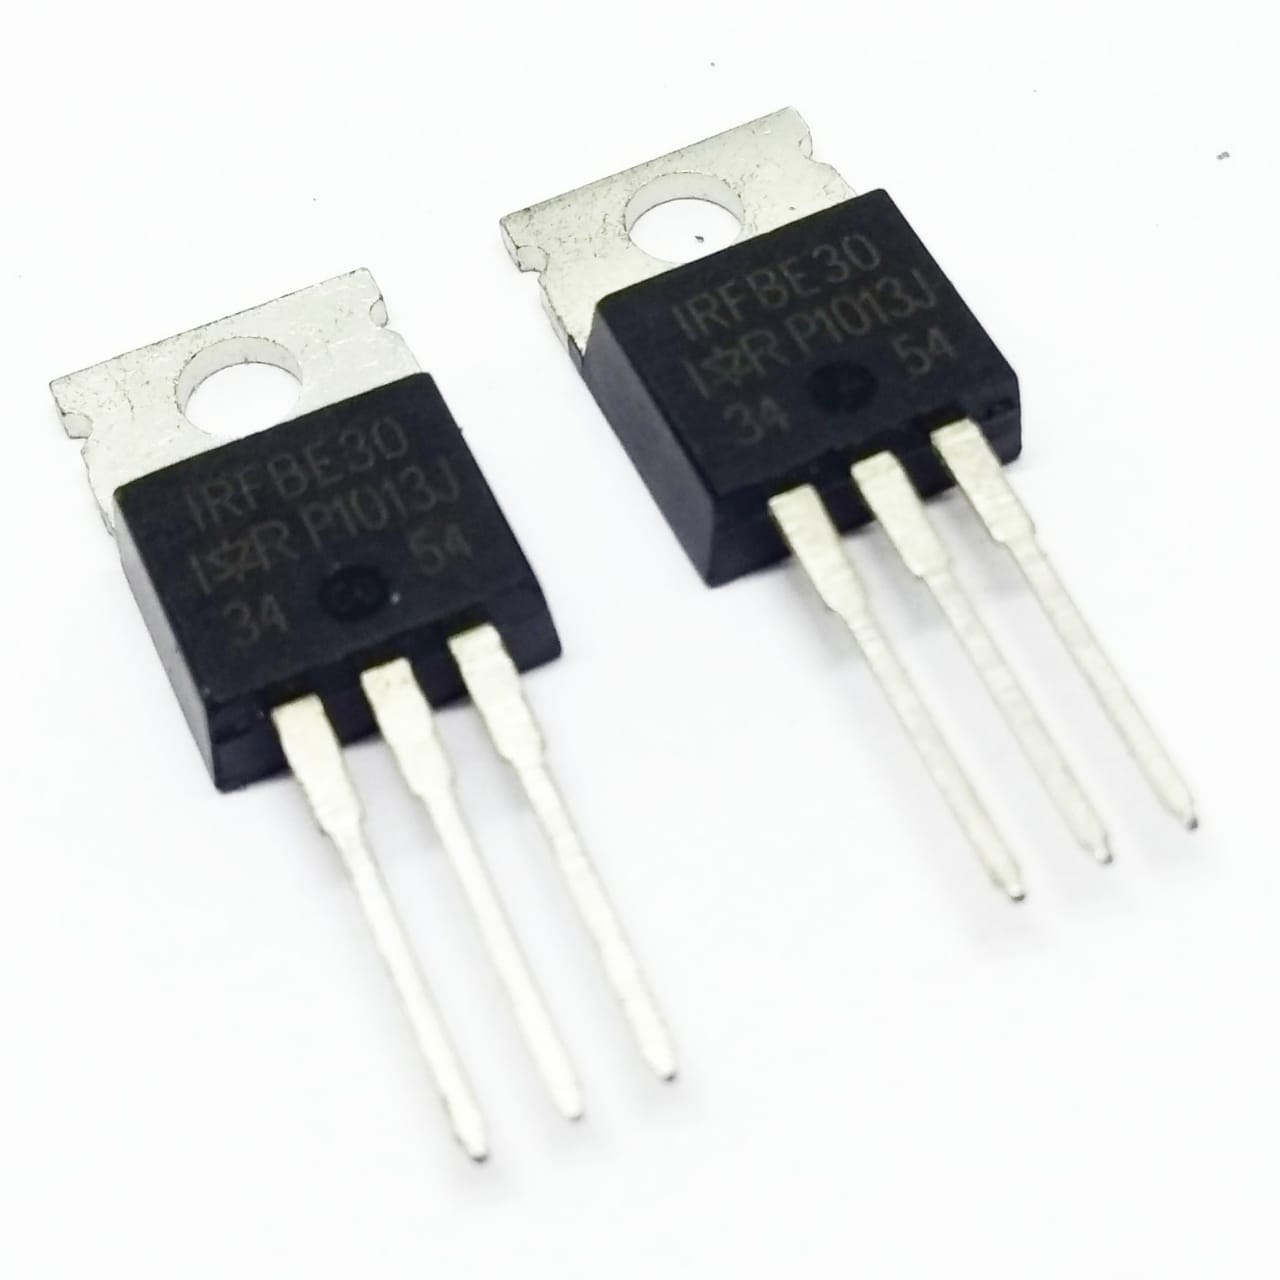 Kit 50 peças - Transistor Mosfet IRFBE30 TO-220